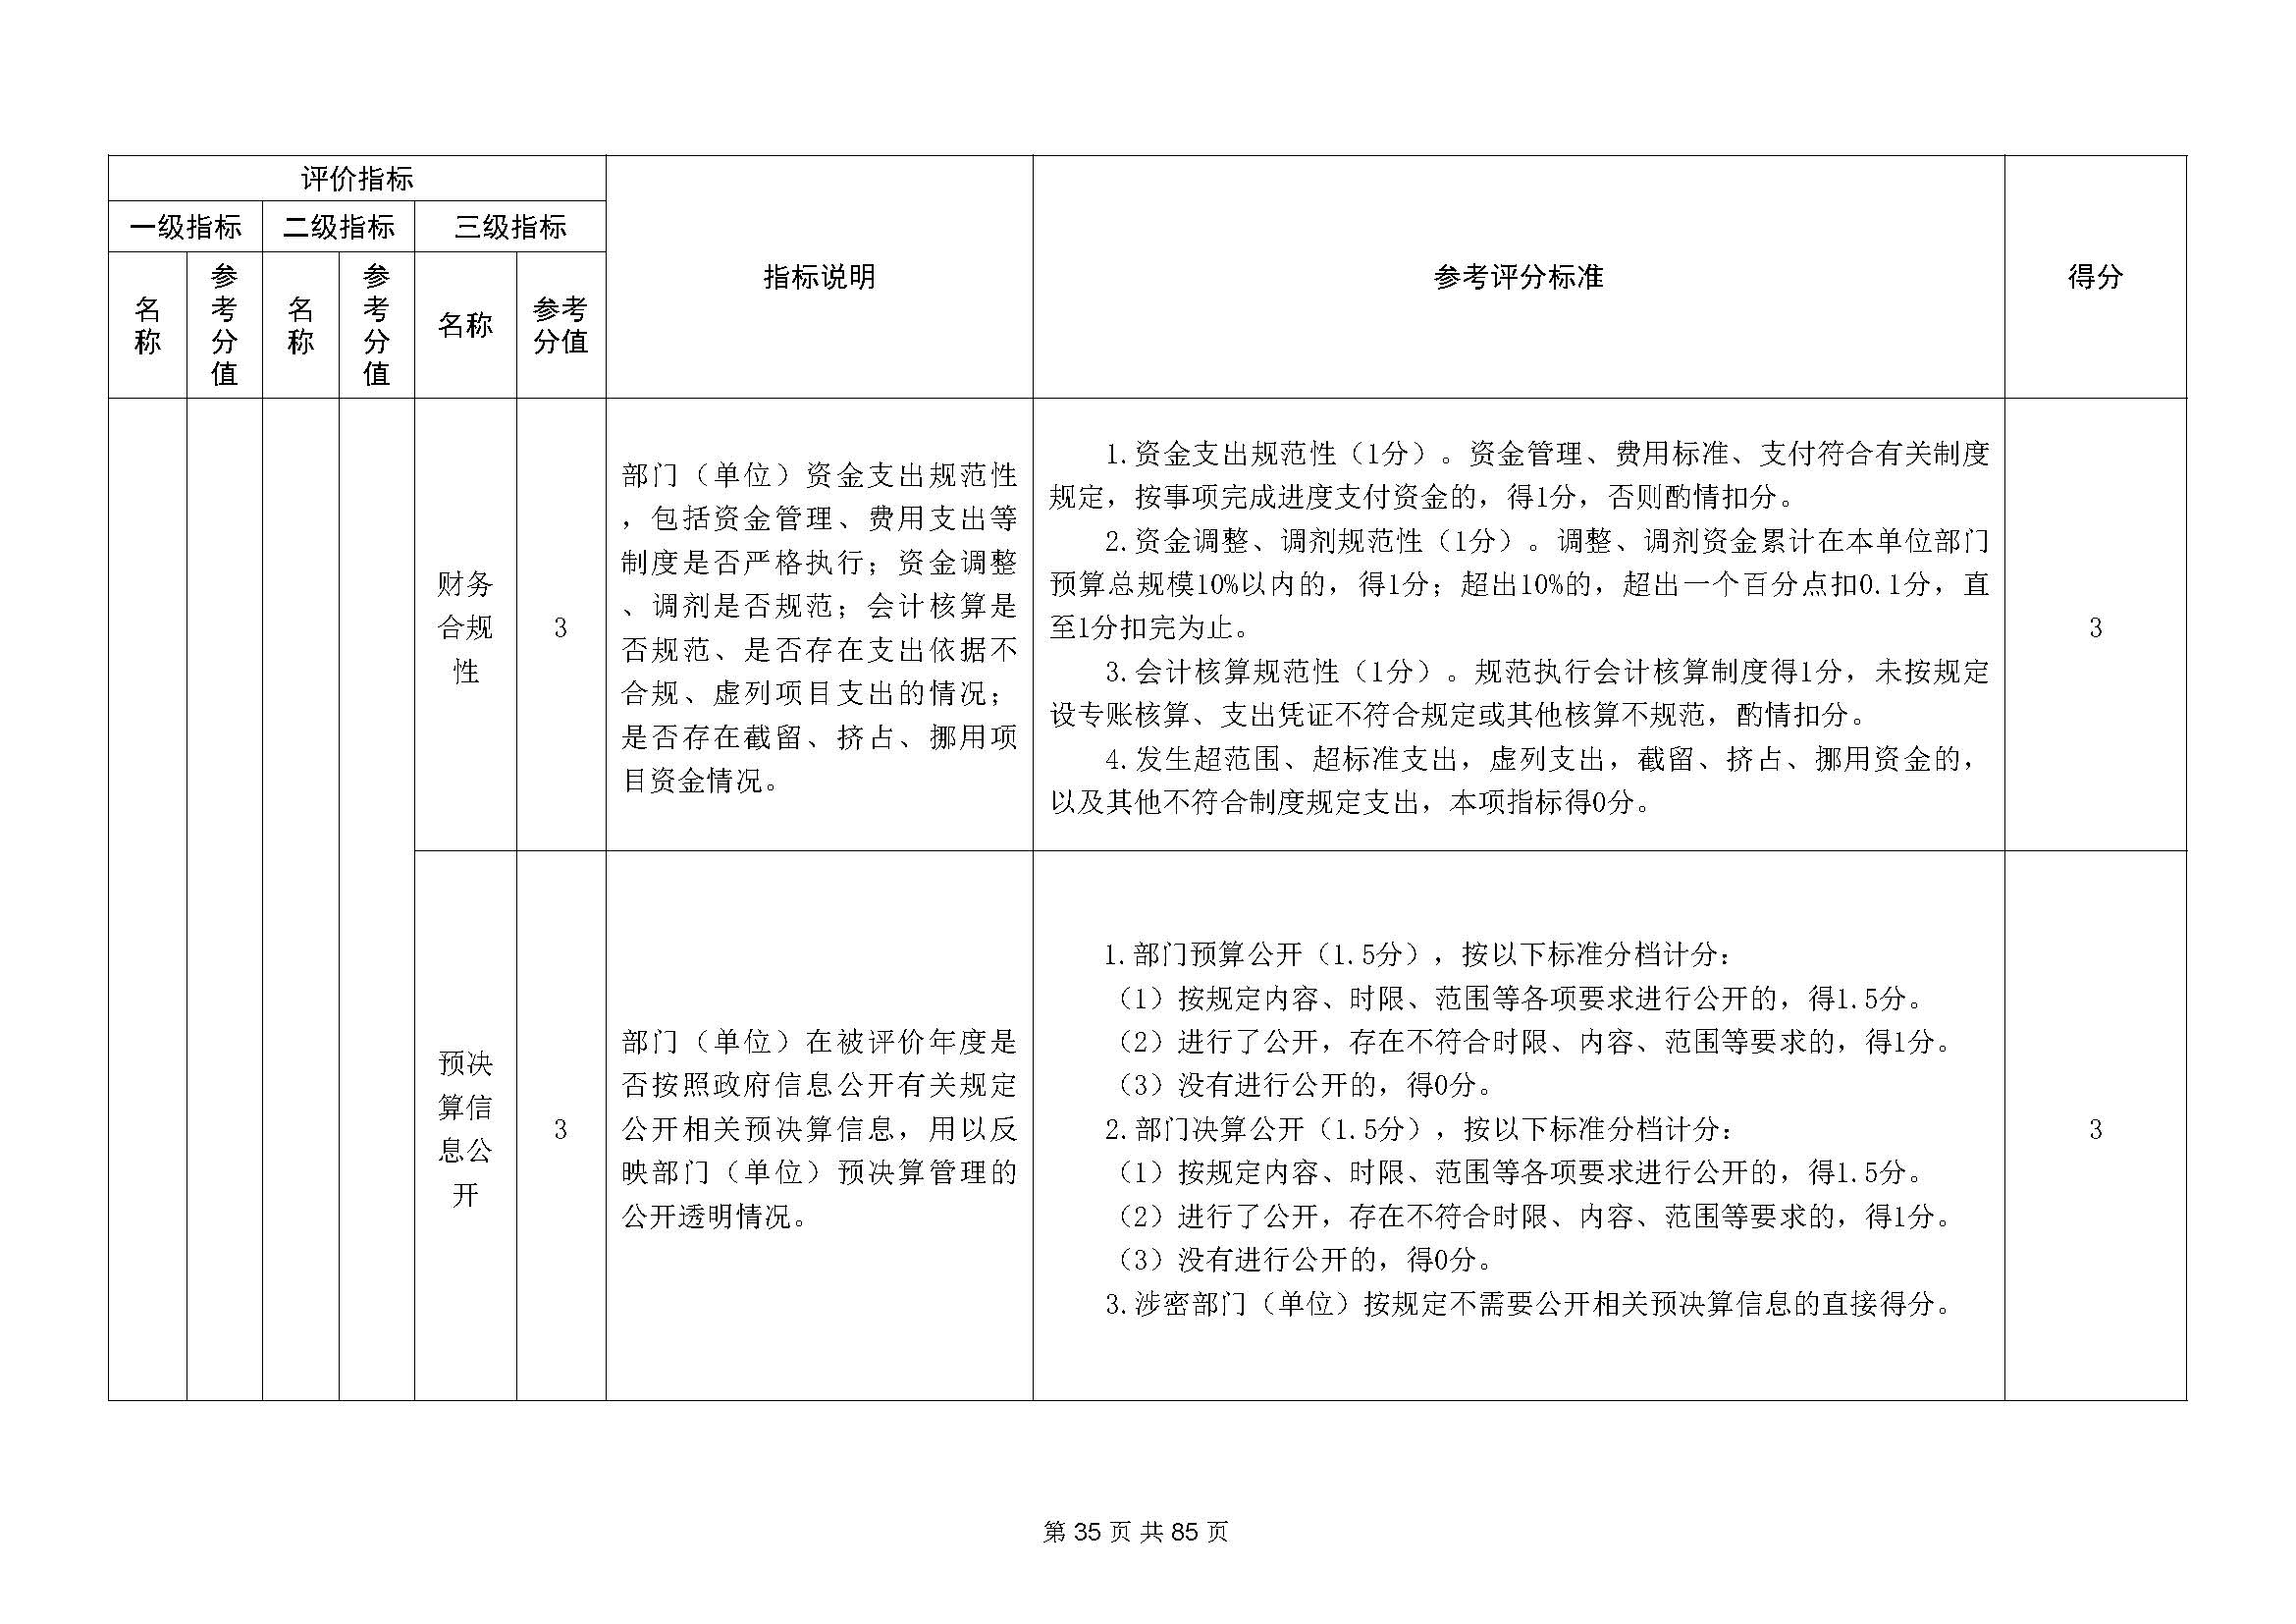 深圳市招生考试办公室2020年度部门决算_页面_36.jpg